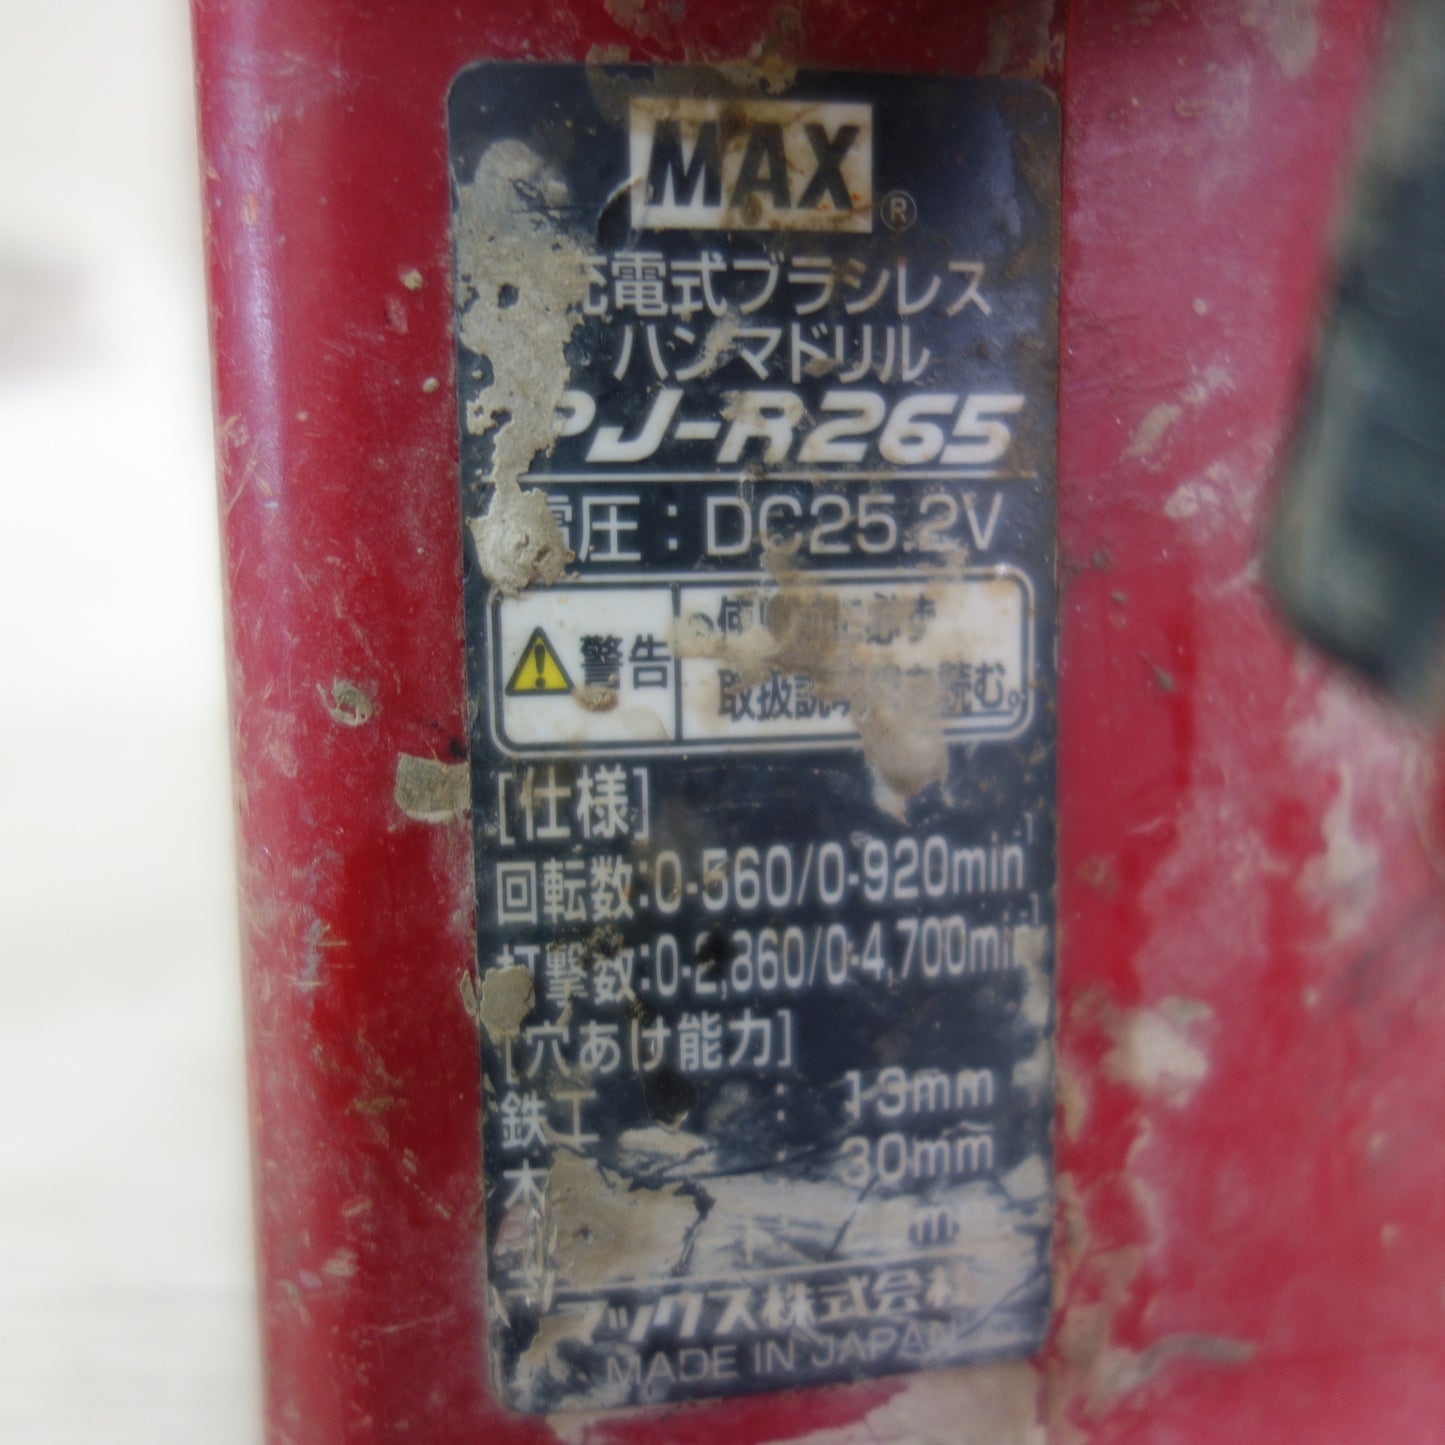 [送料無料] ☆MAX マックス 充電式 ブラシレス ハンマドリル PJ-R265 電動 工具 ハンマードリル 充電器 JC-928 バッテリー JP-L92540A☆